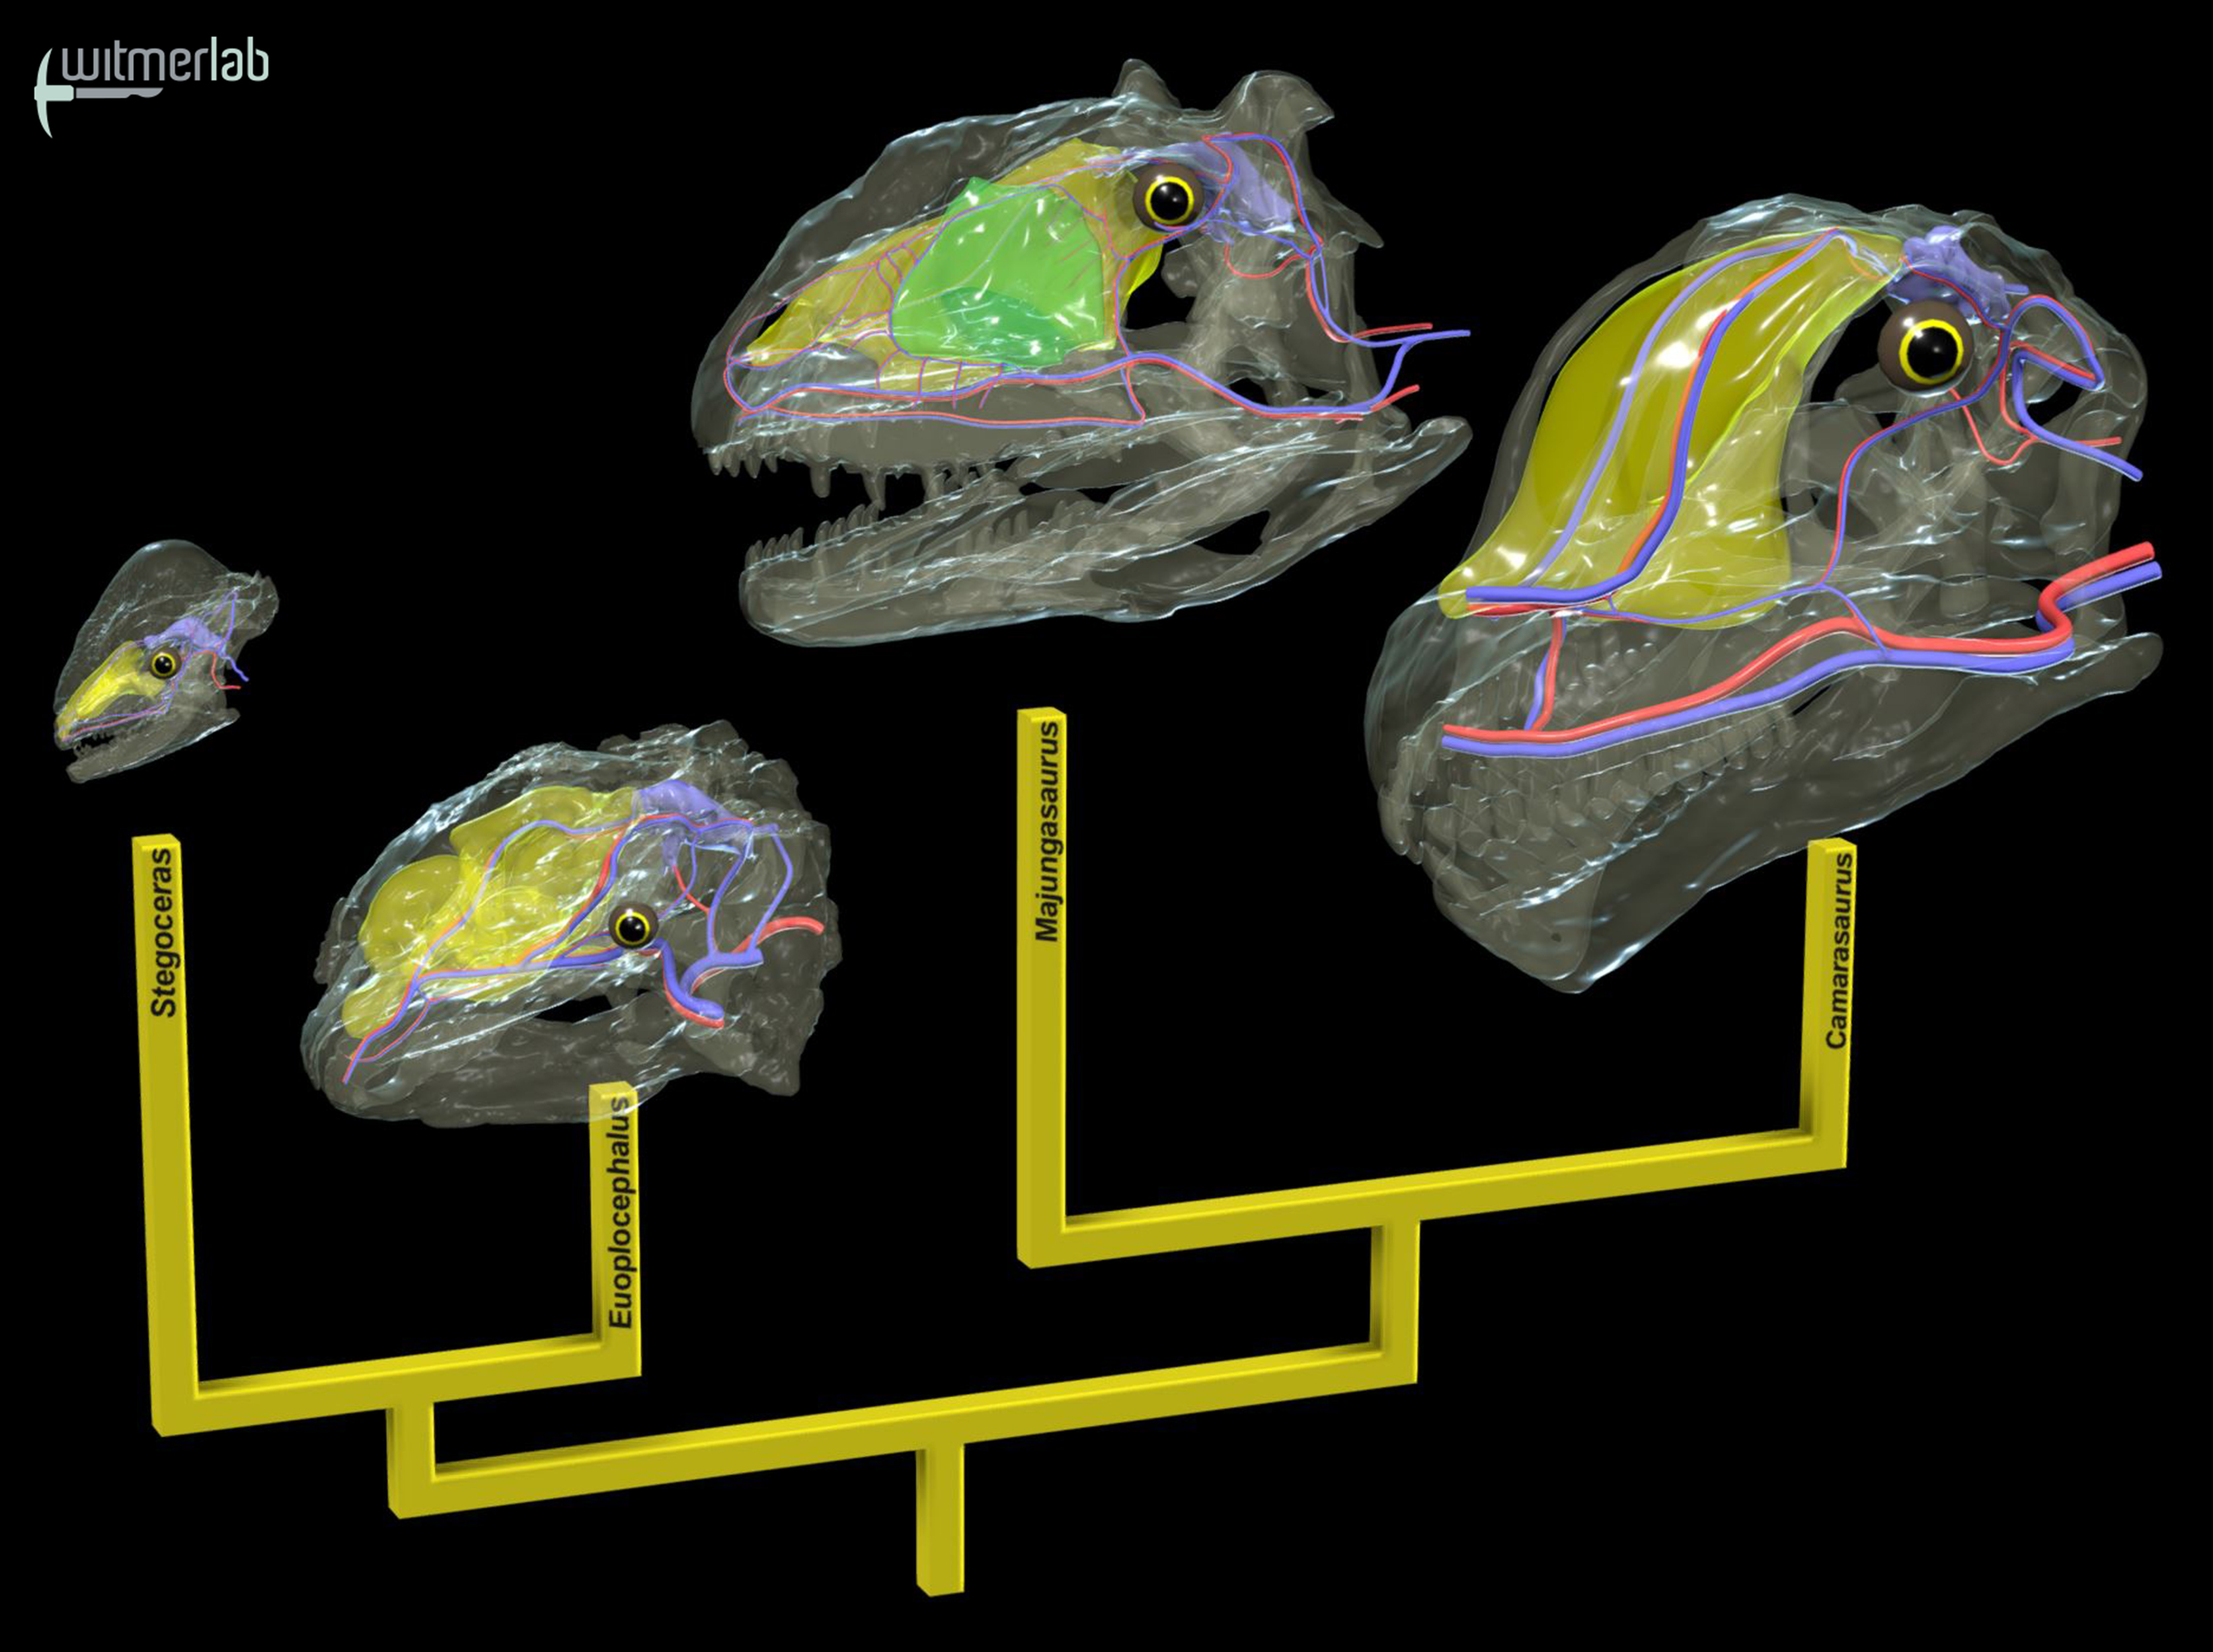 Giant Dinosaurs Evolved Various Brain-cooling Mechanisms